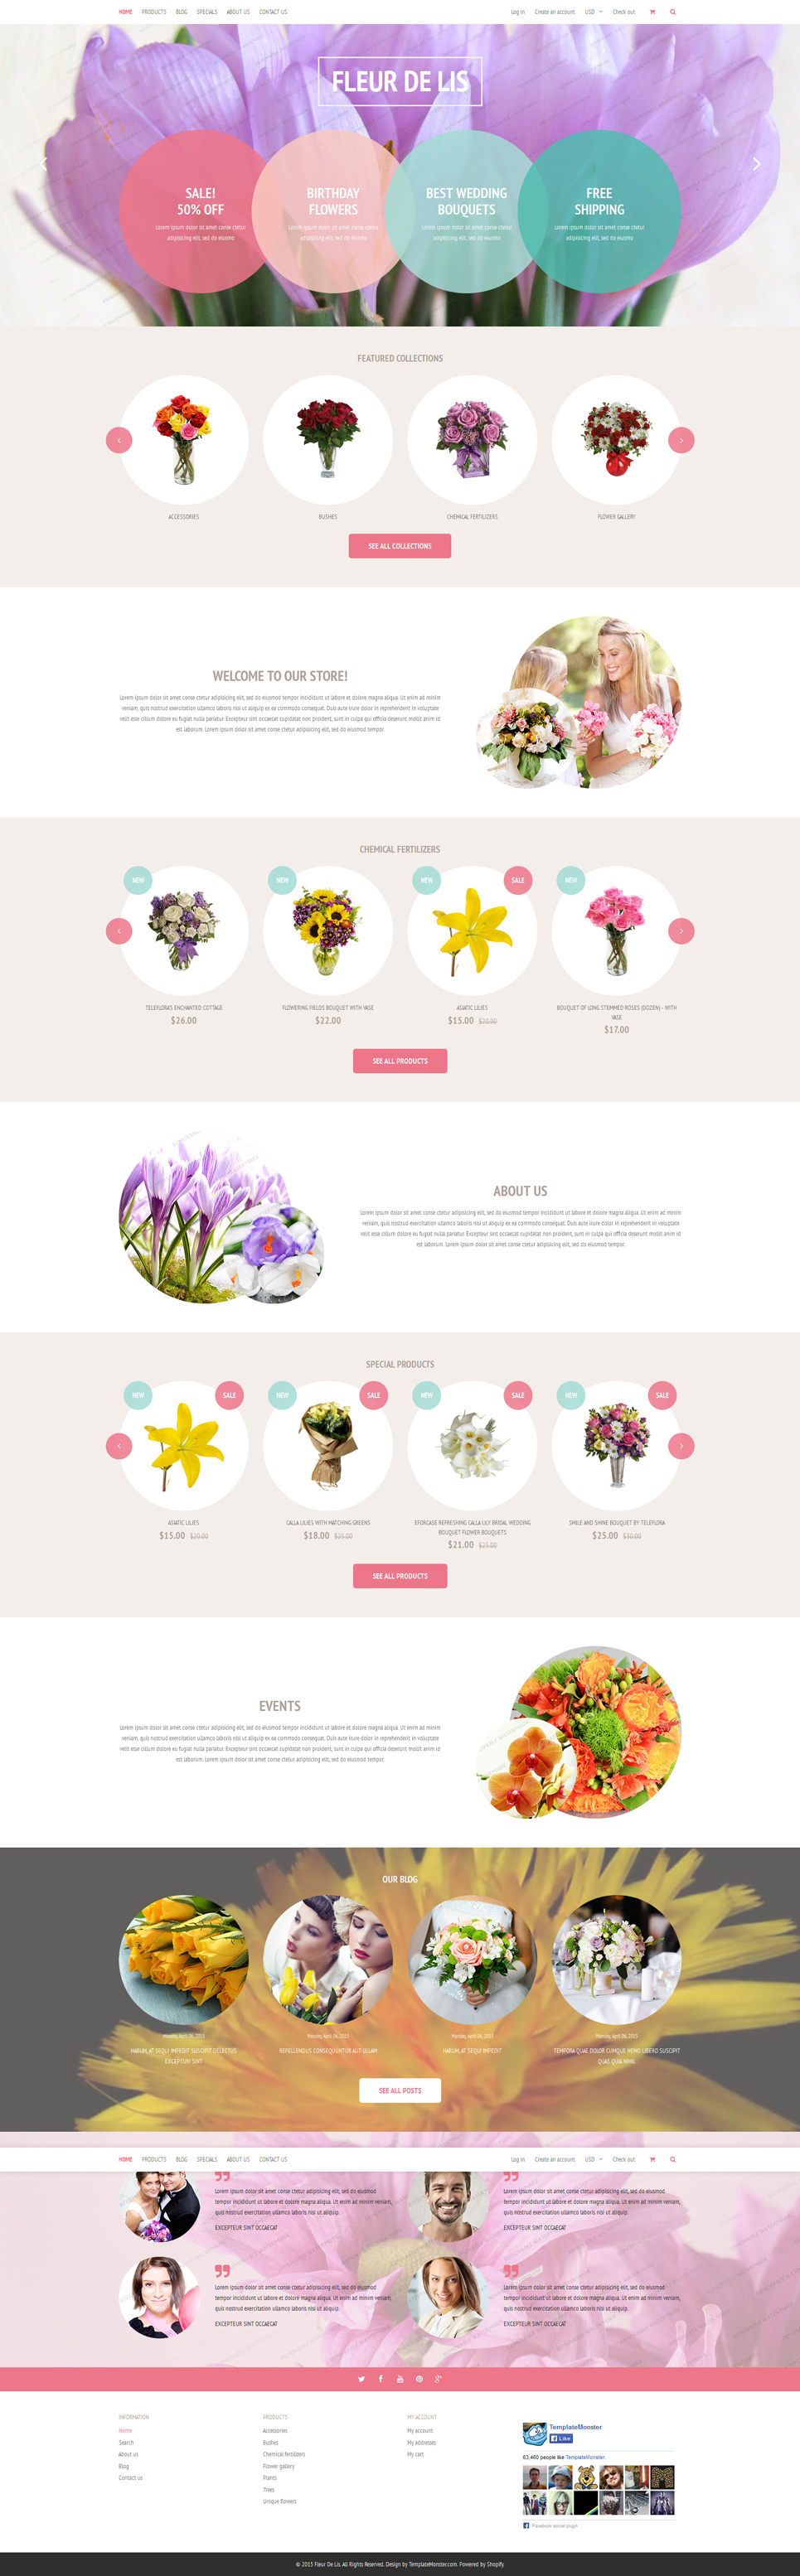 Fleur de lis Shopify Theme Shopify Theme New Screenshots BIG